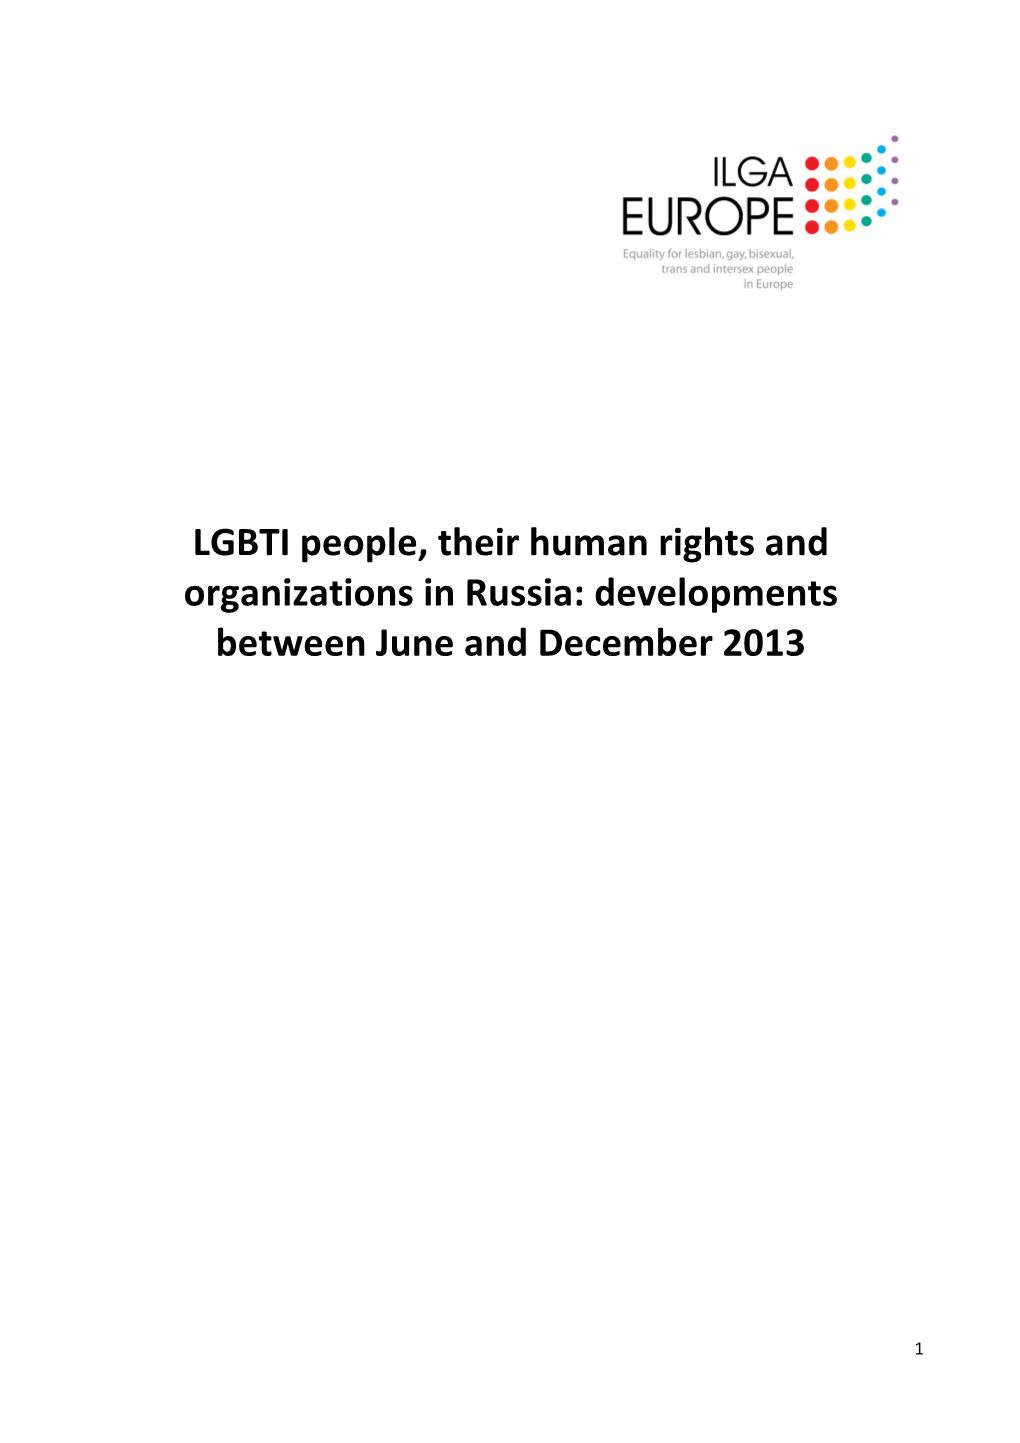 LGBTI Developments in Russia Jun -Dec 2013